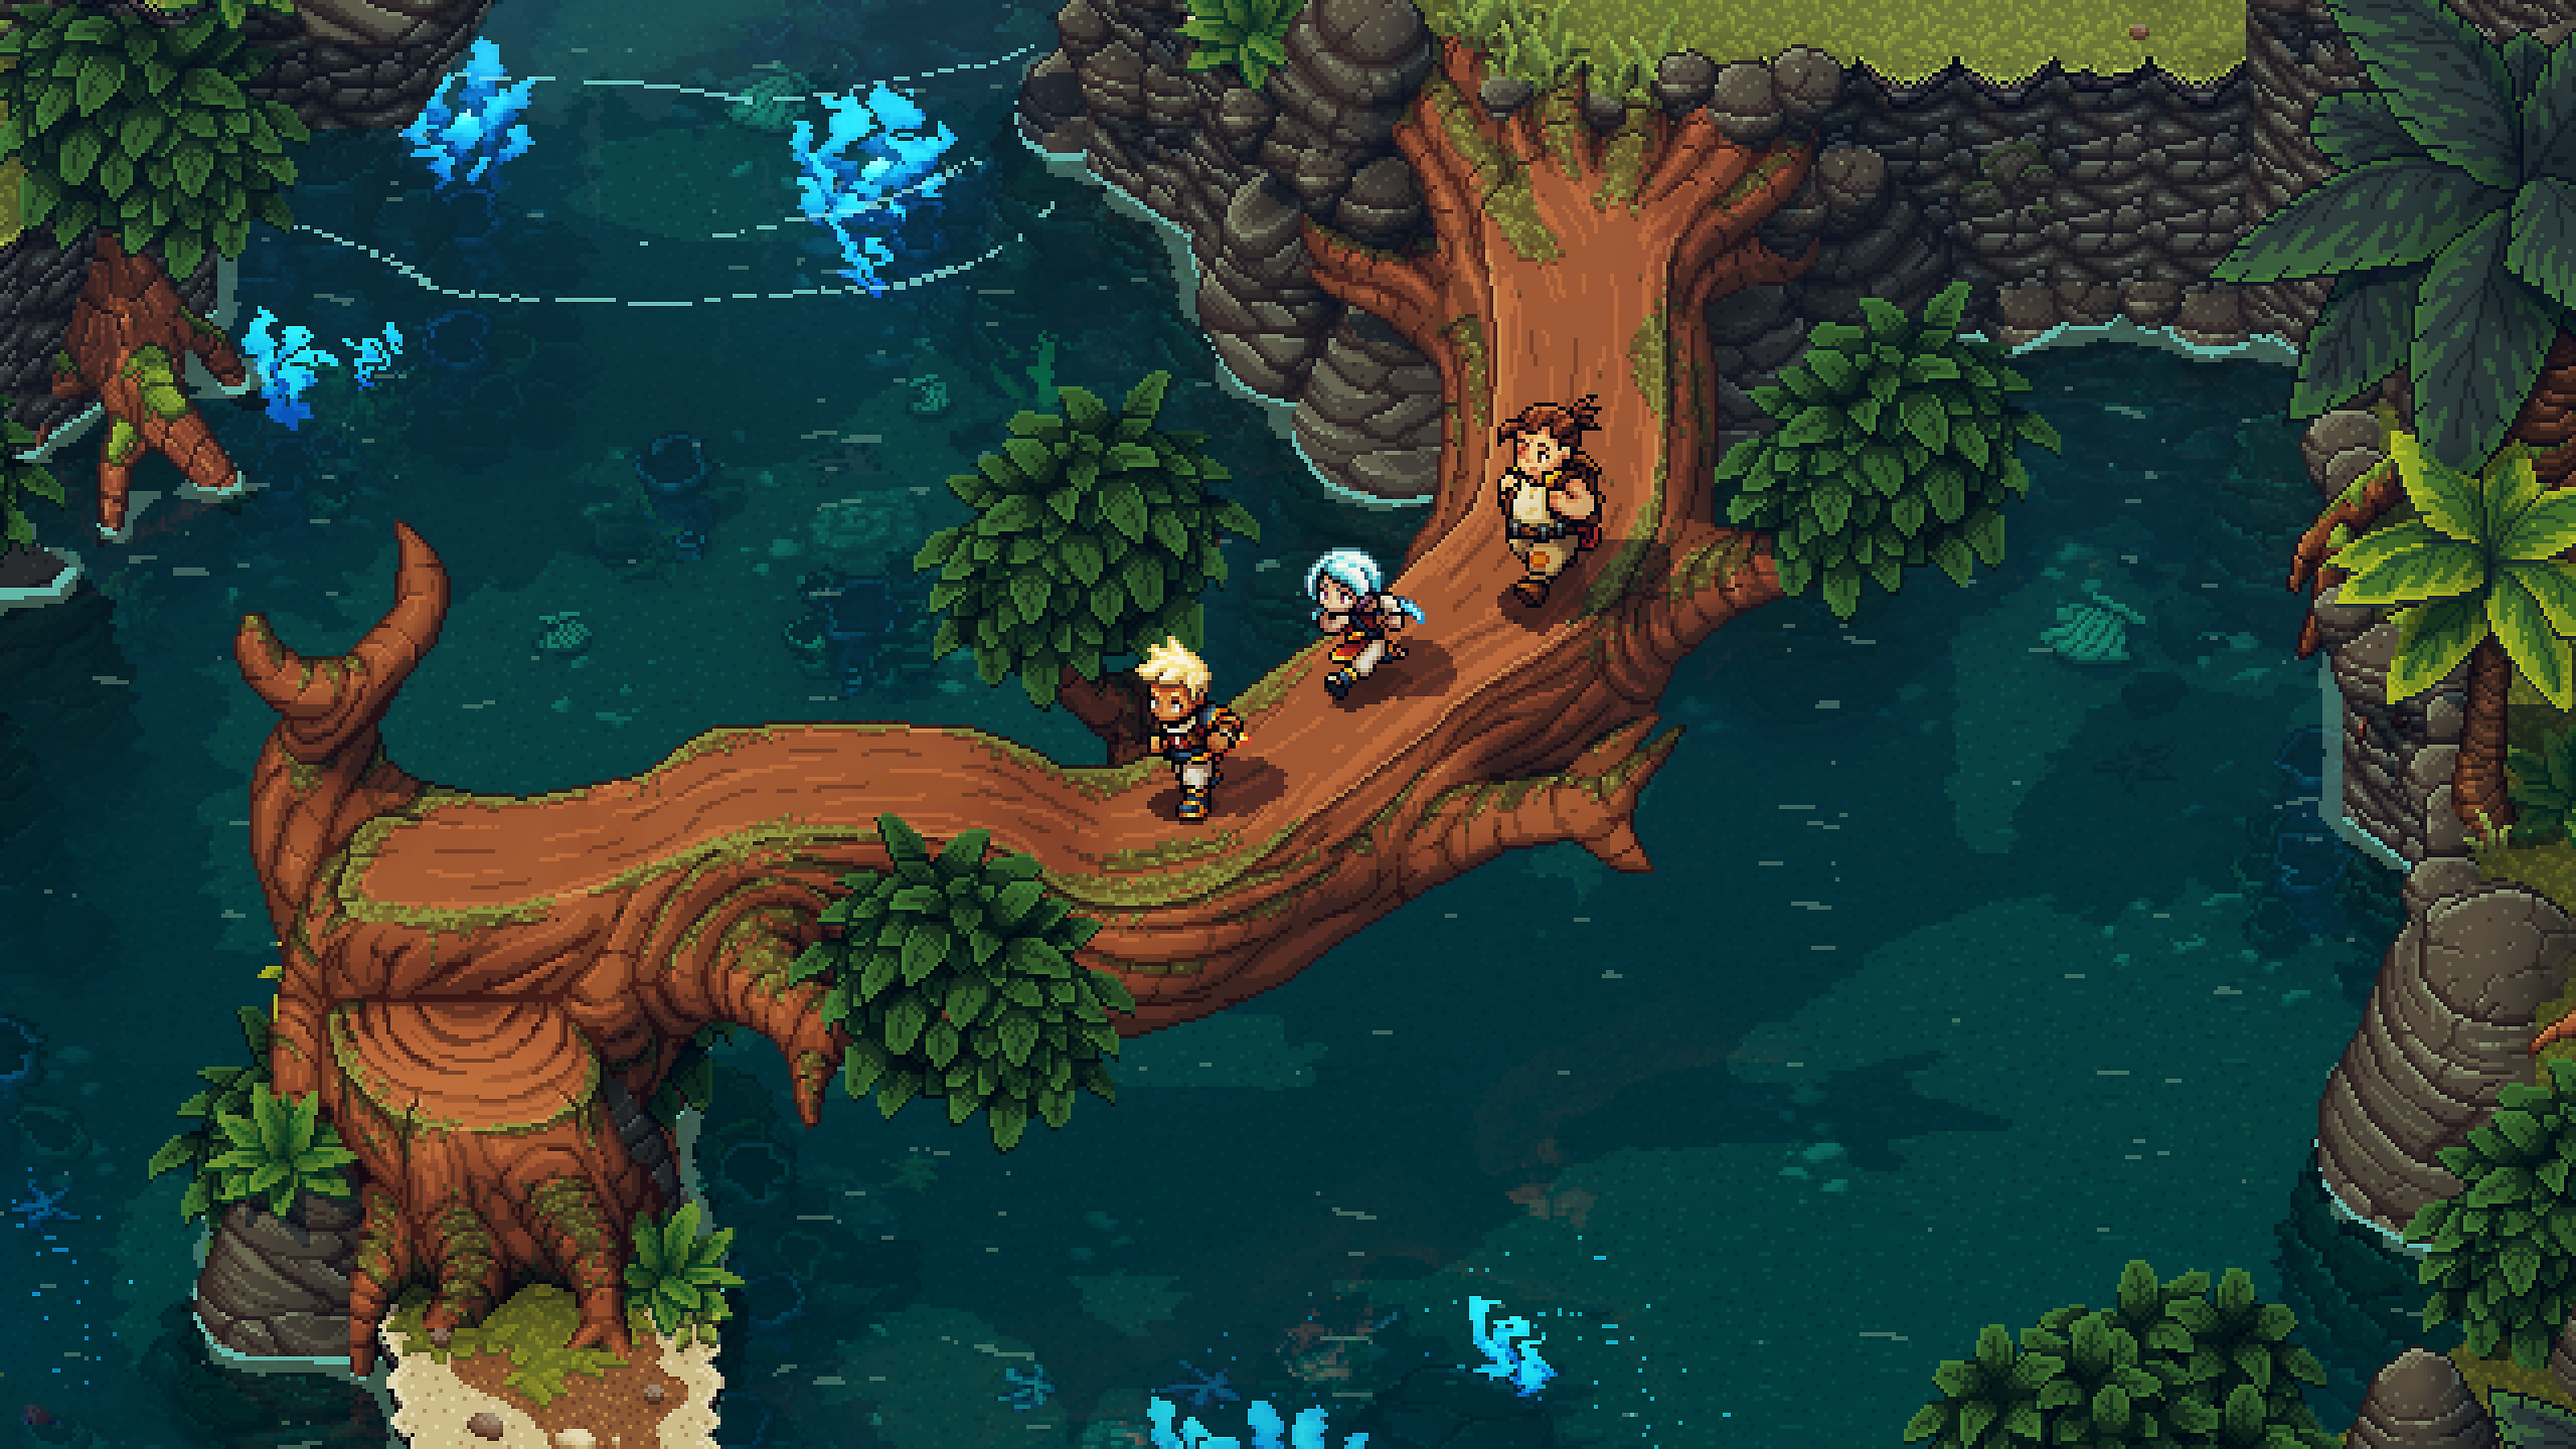 Snímek ze hry zobrazující tři postavy běžící přes kládu.